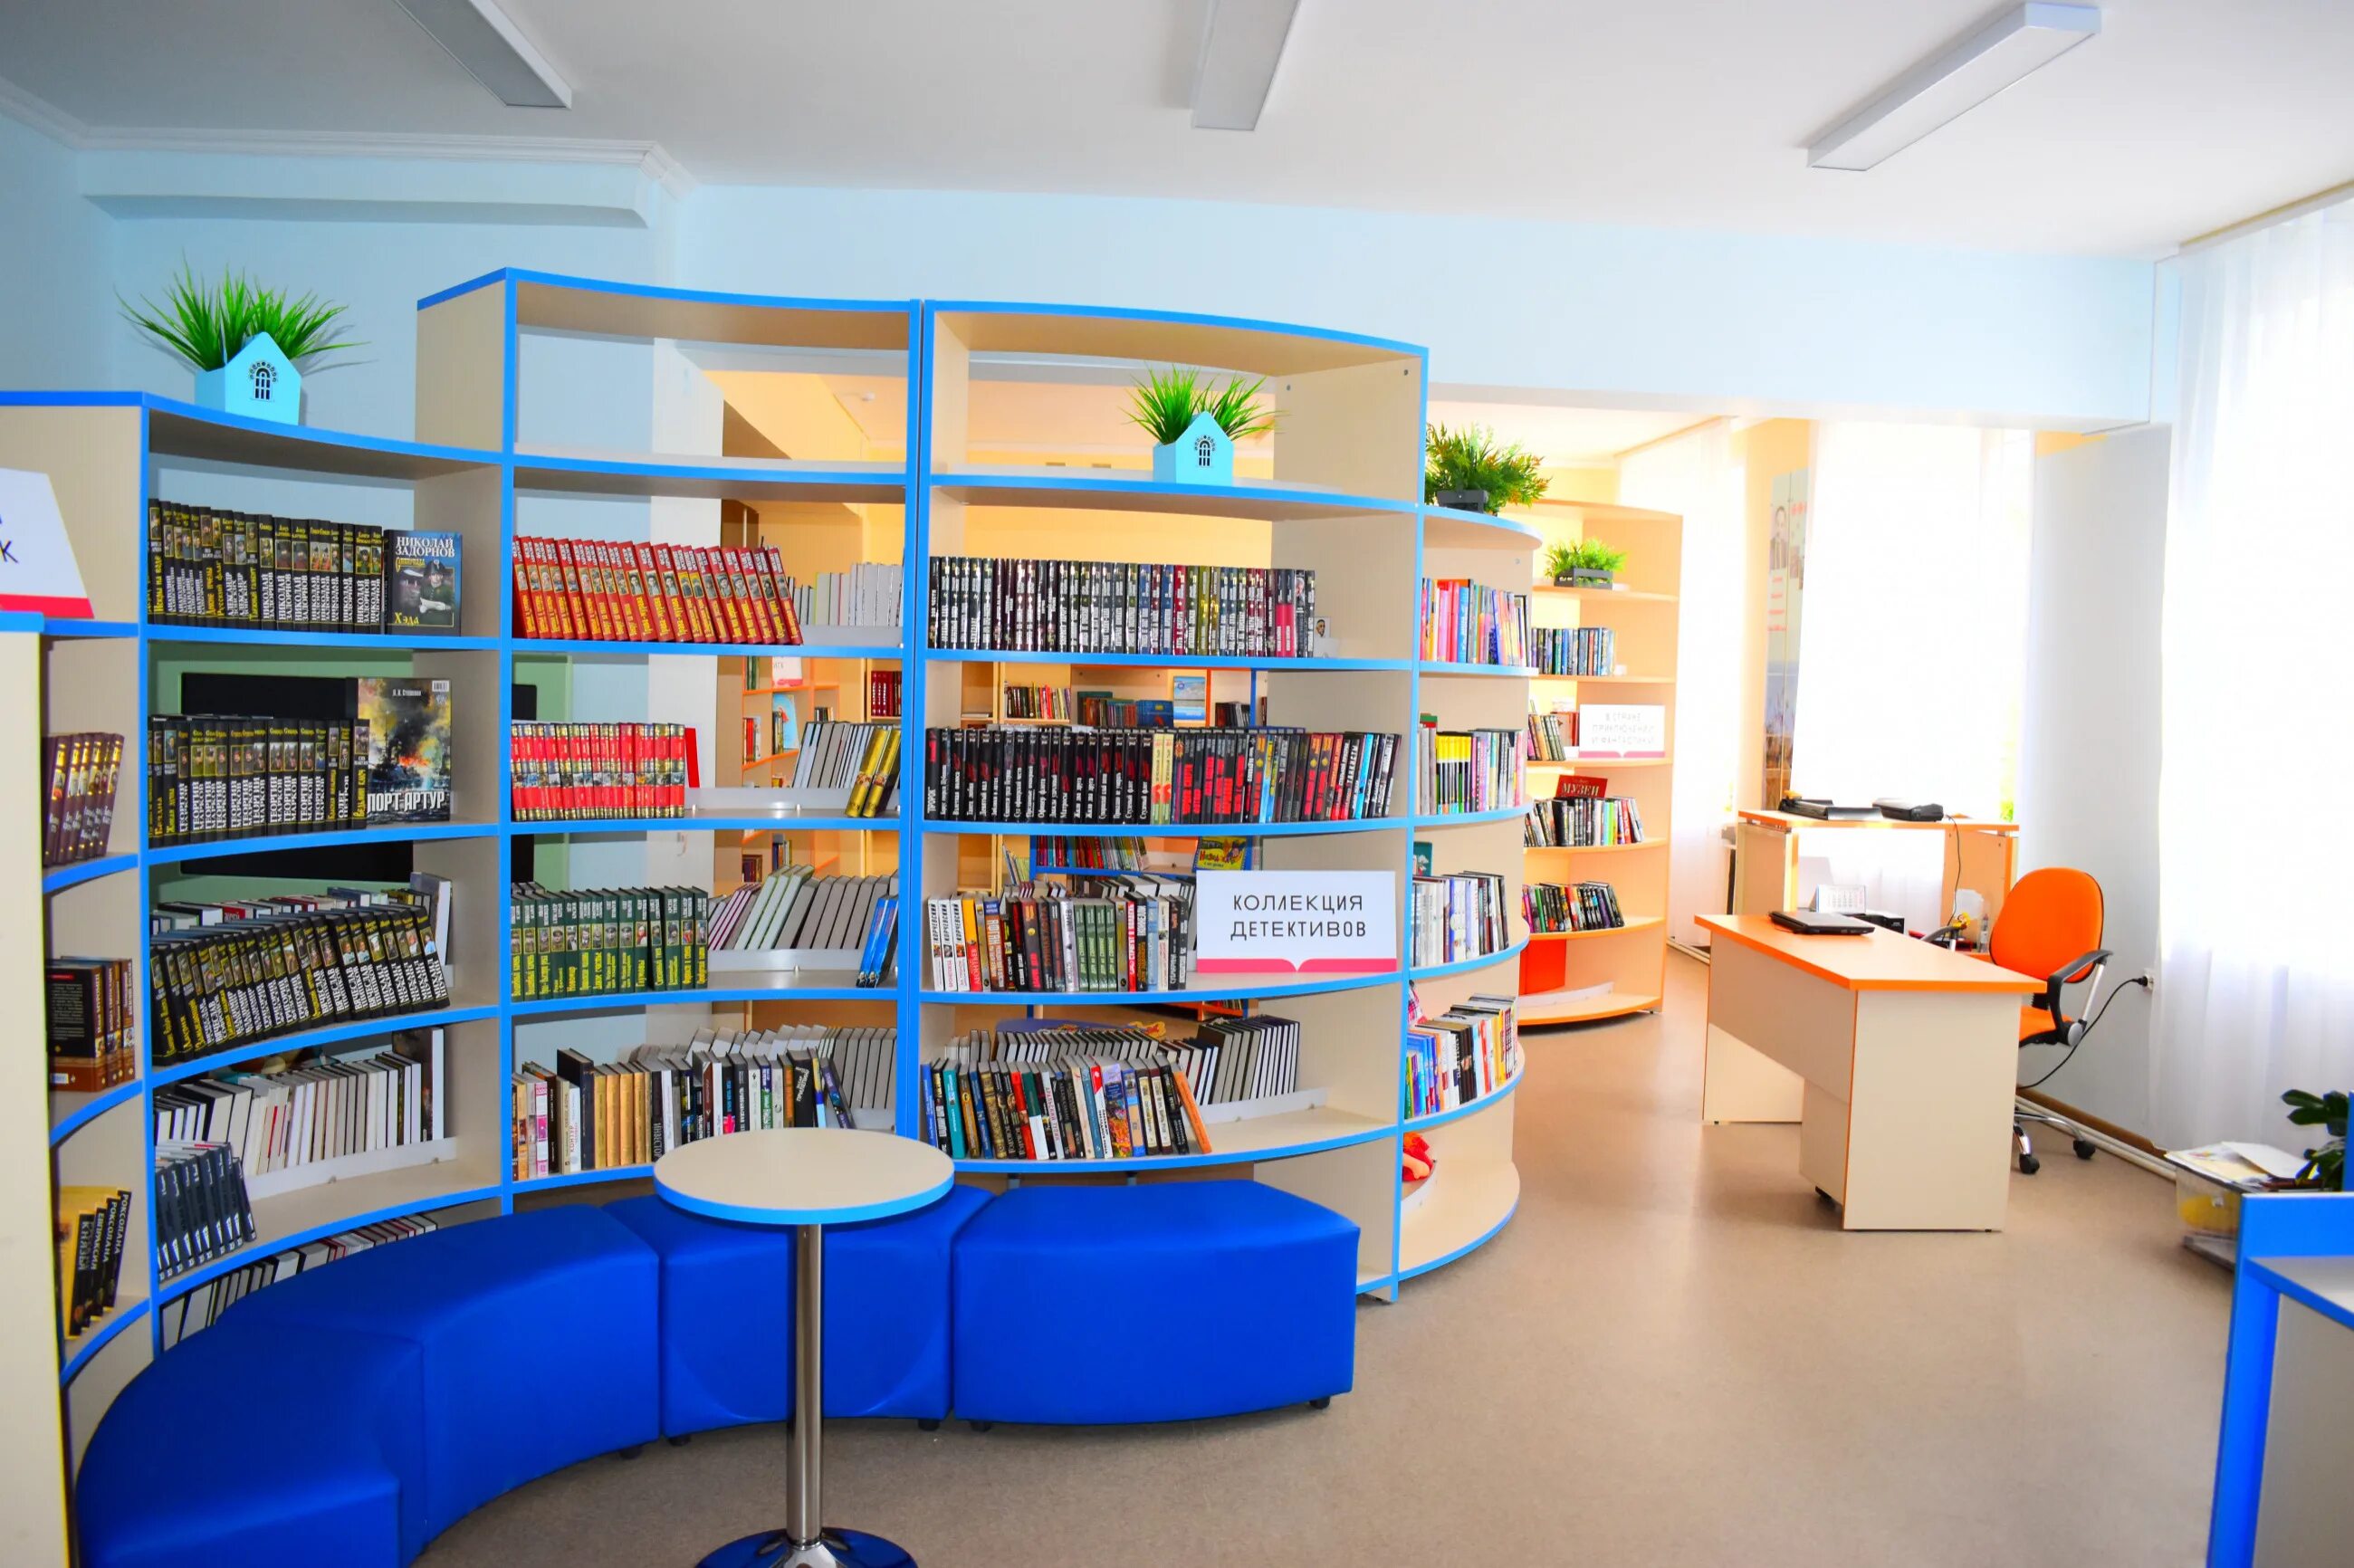 Модельная библиотека. Новая библиотека. Библиотека нового поколения. Современная модельная библиотека.